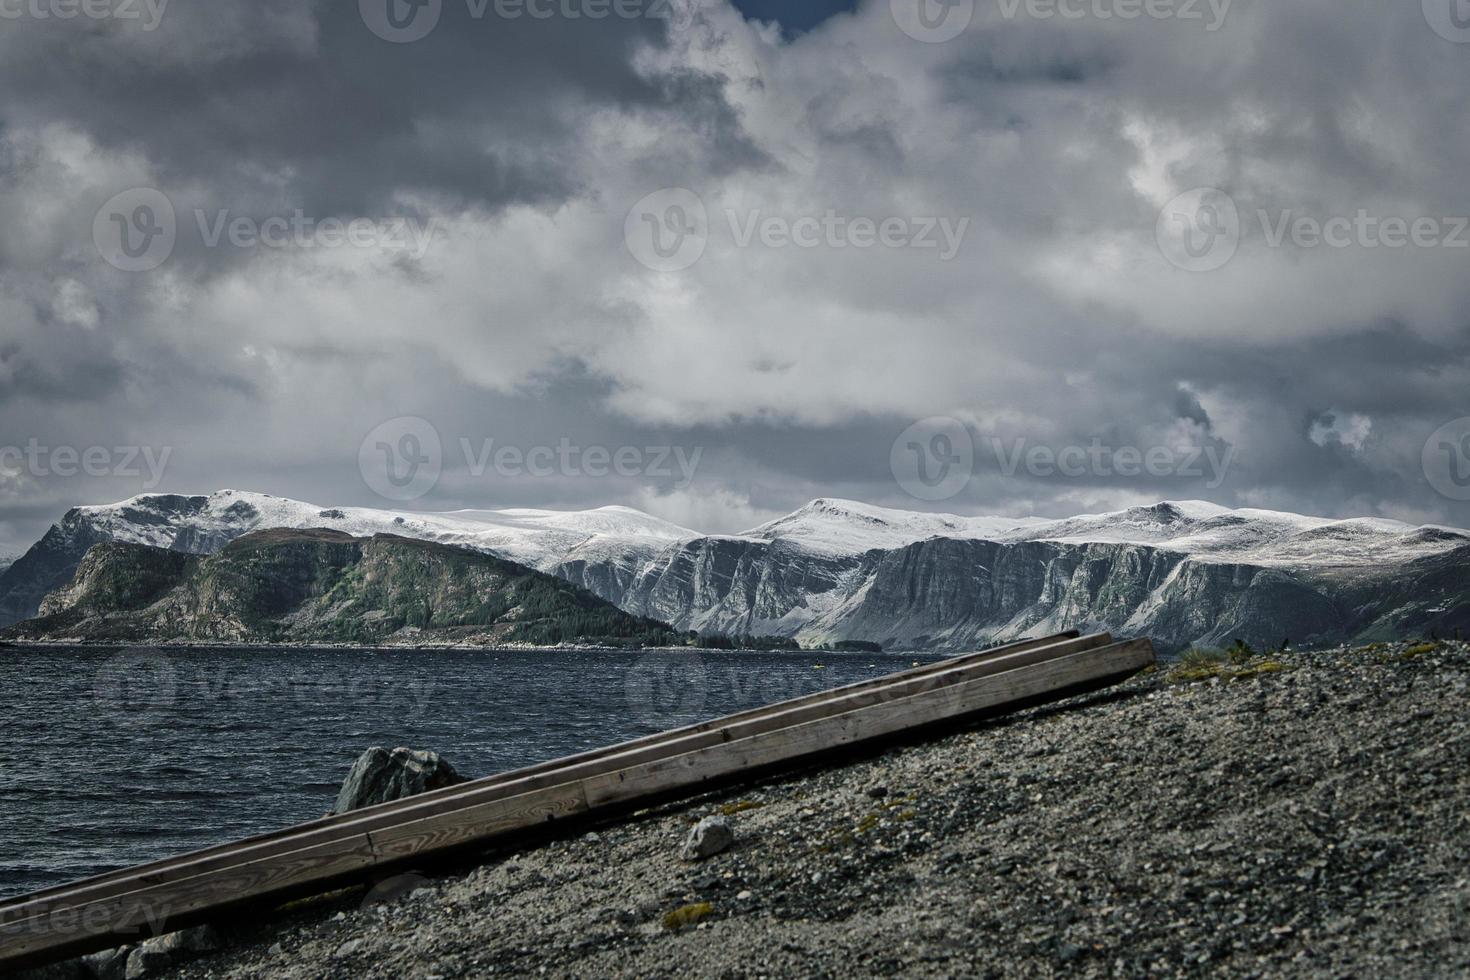 montagne innevate a west cap in norvegia. foto